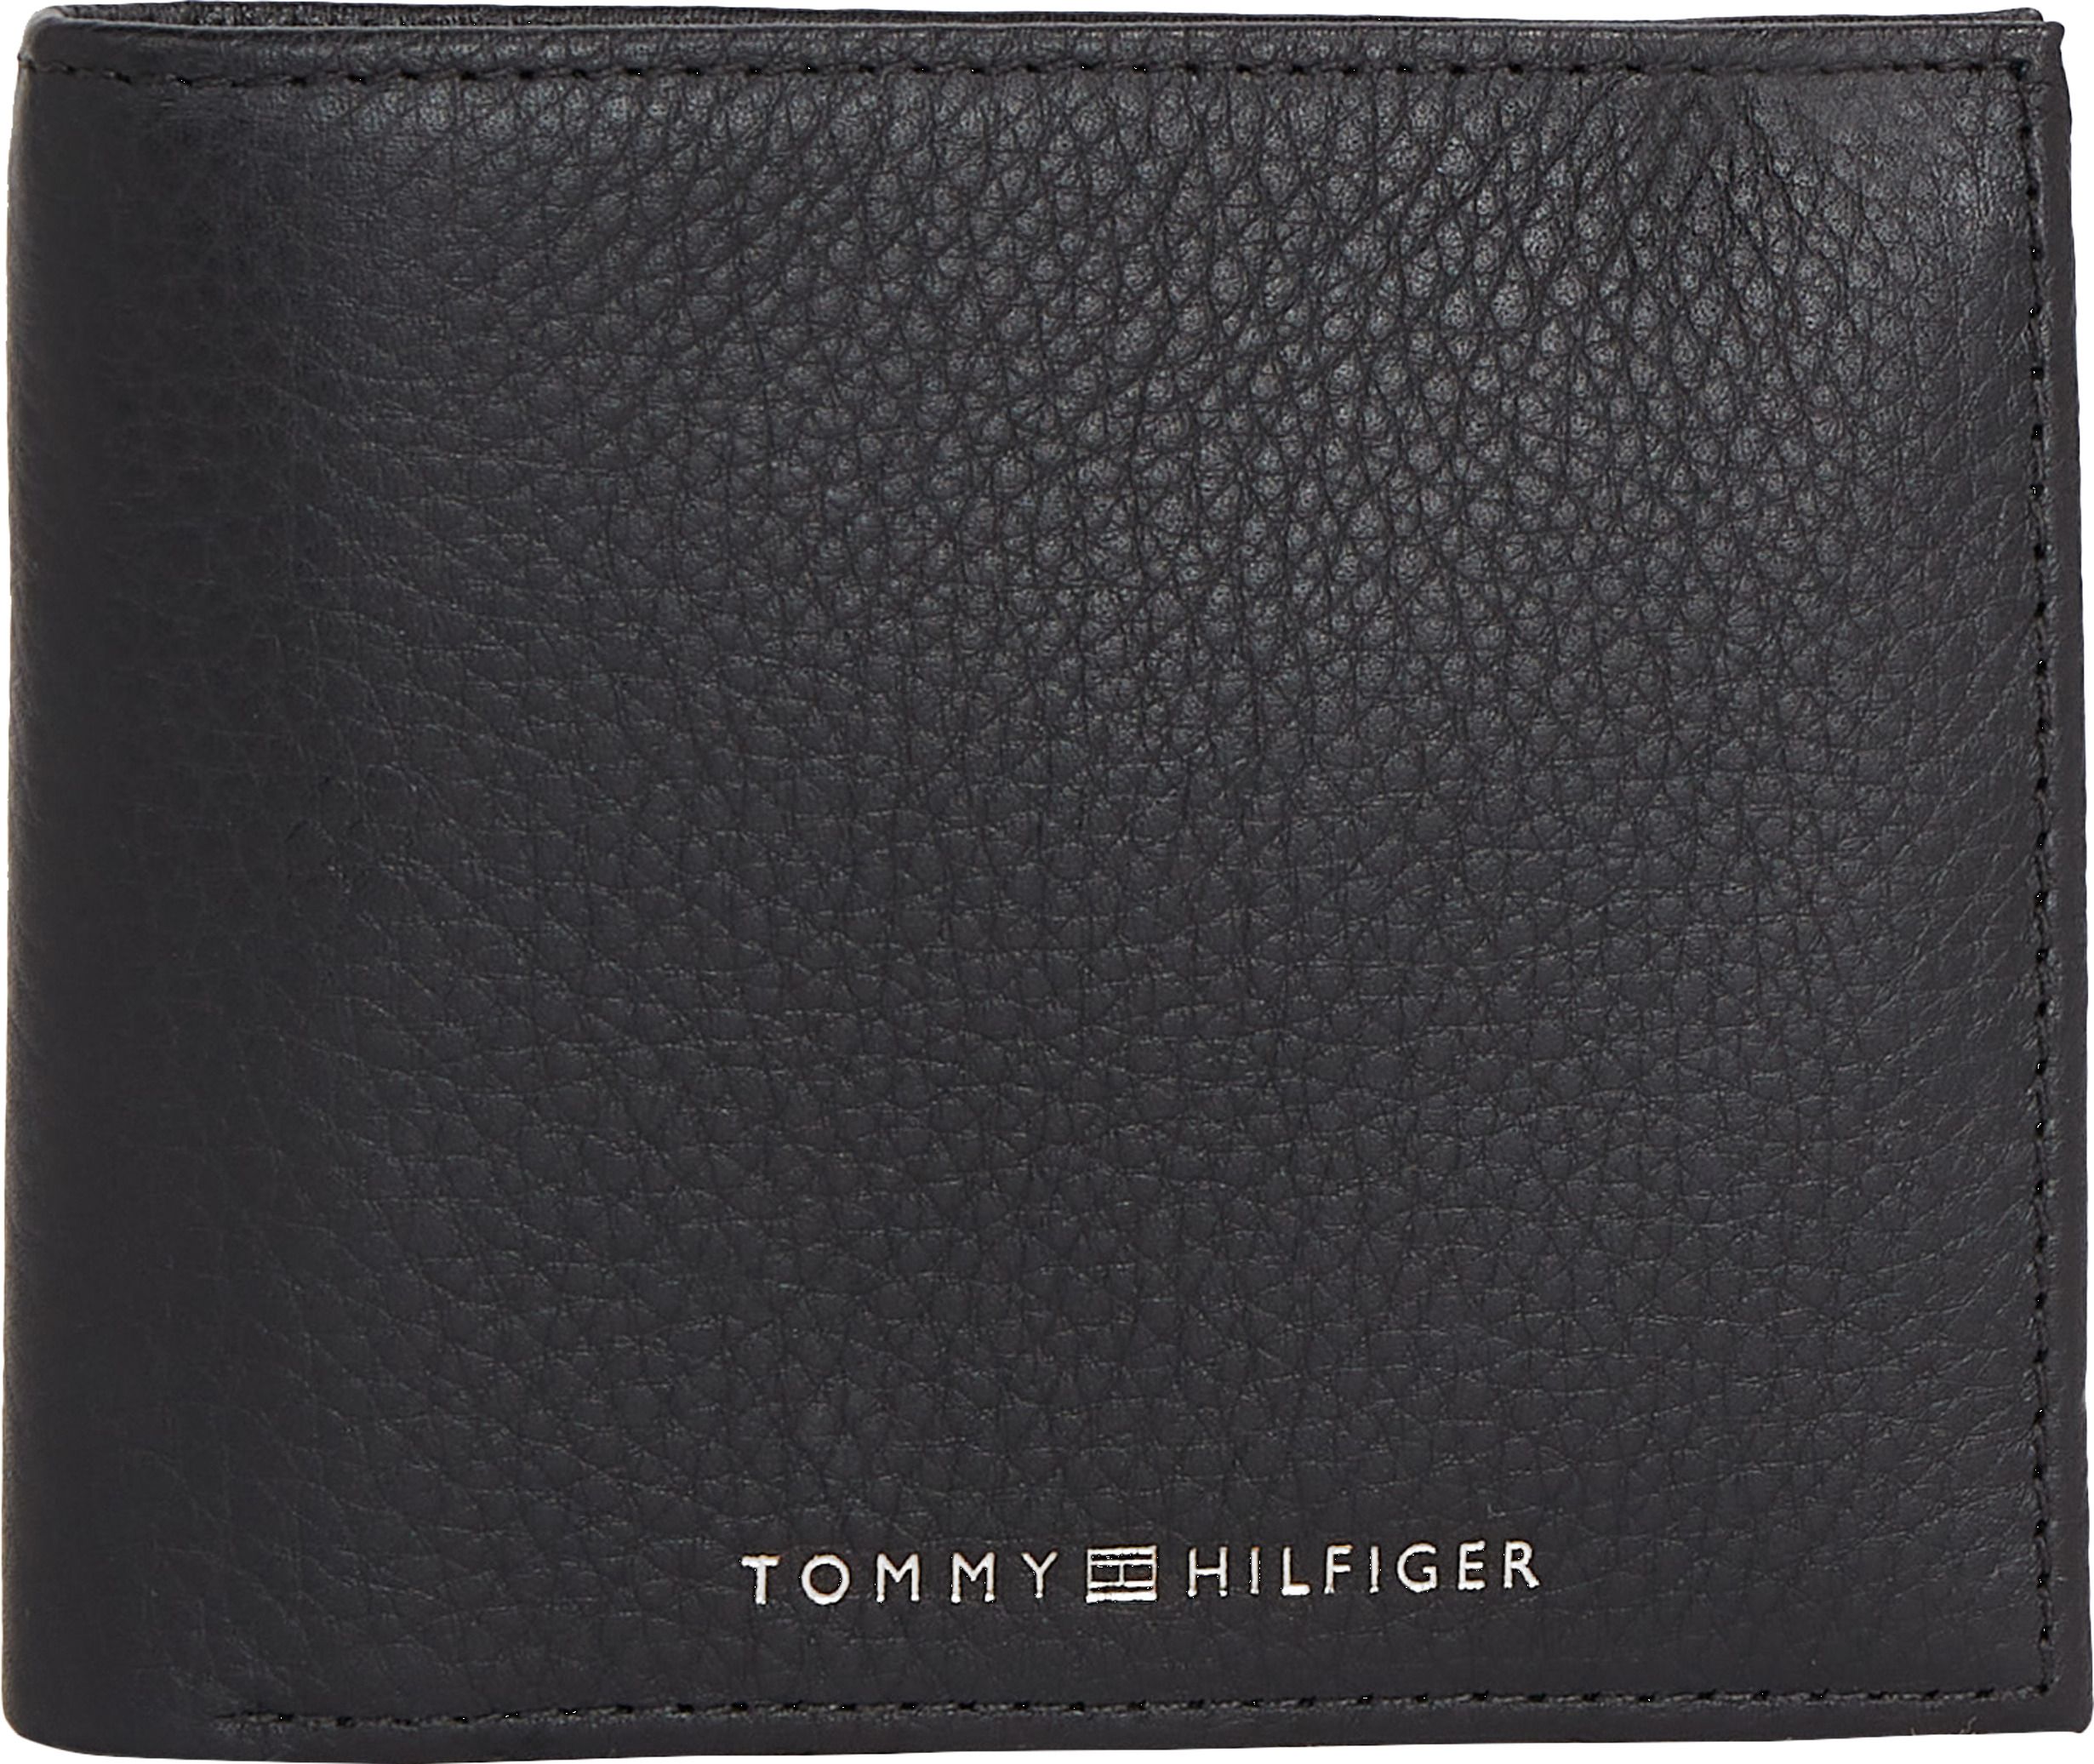 Brieftasche Premium Leder Hilfiger Tommy Bifold Schwarz RFID